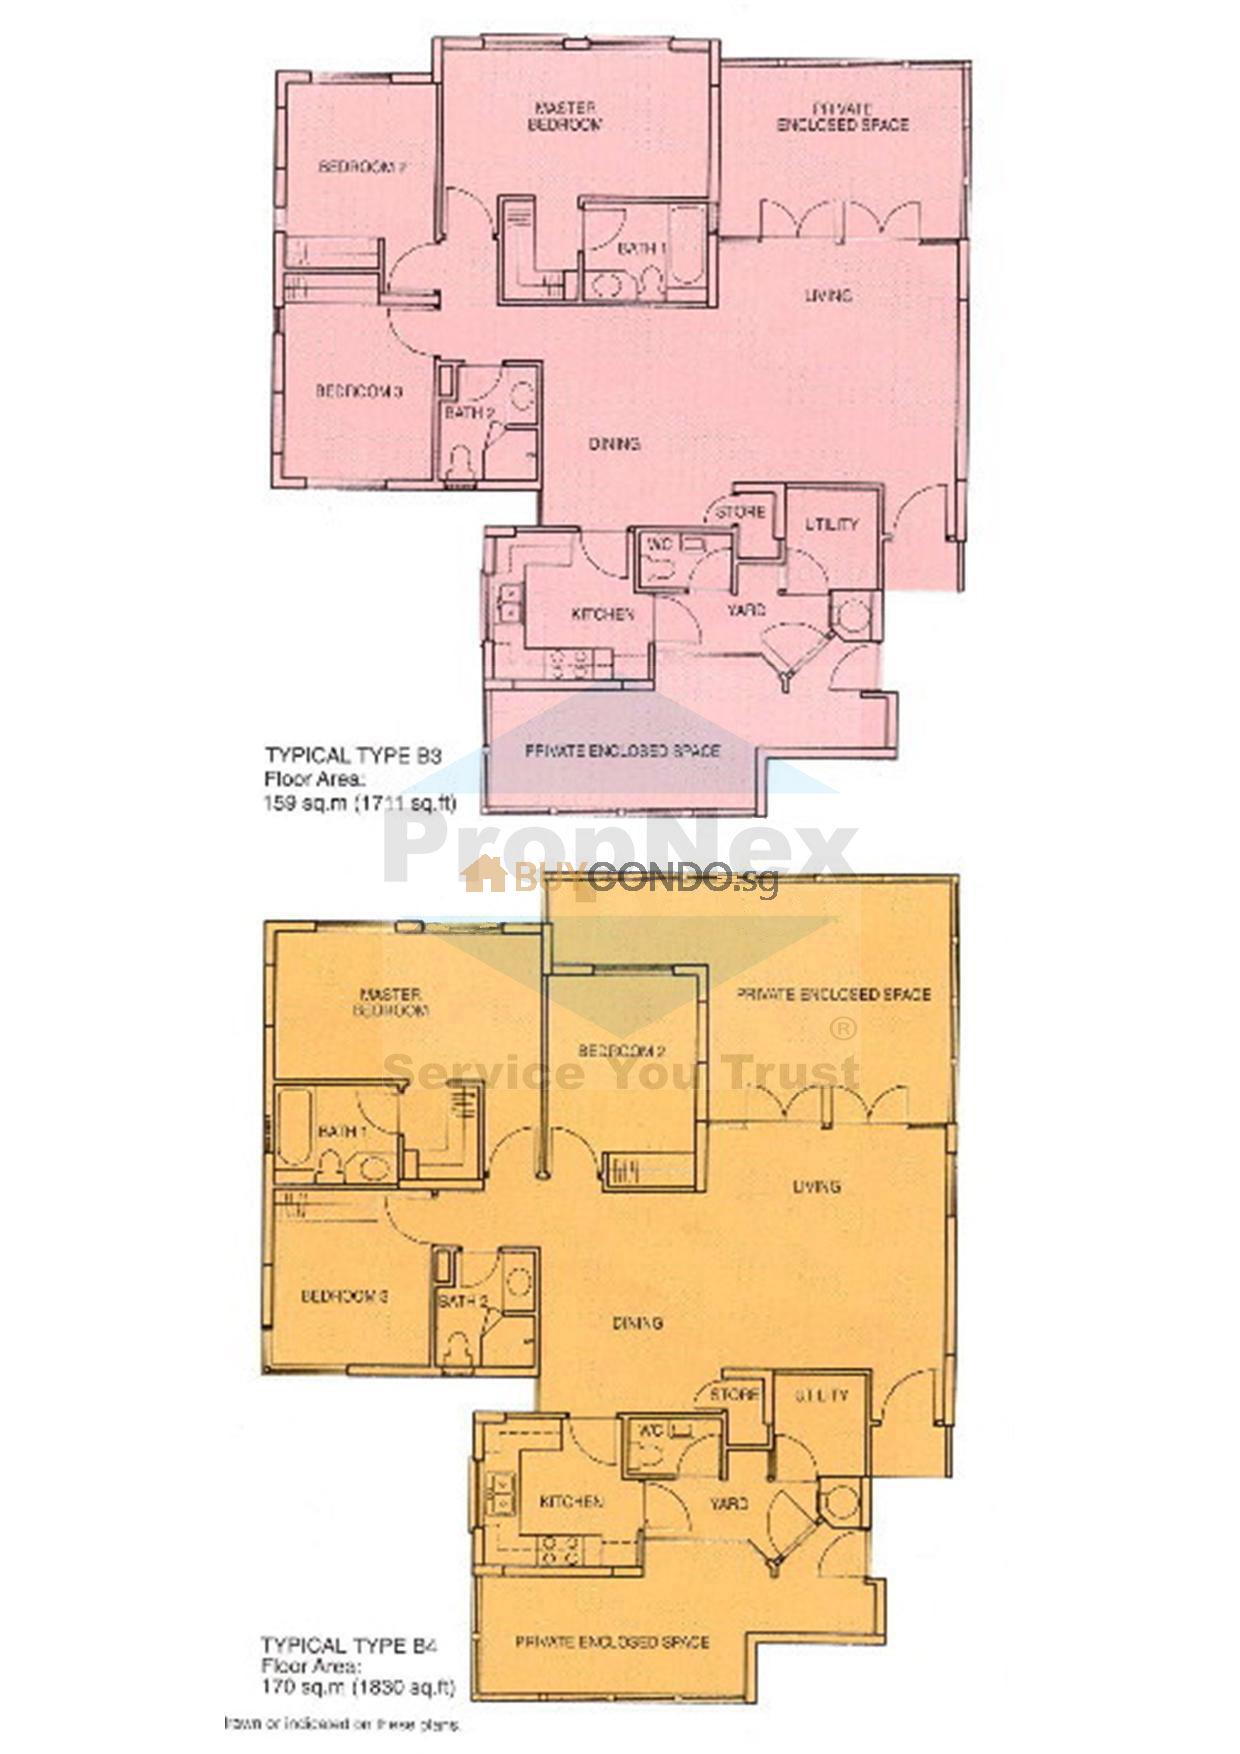 Merawoods Condominium Floor Plan